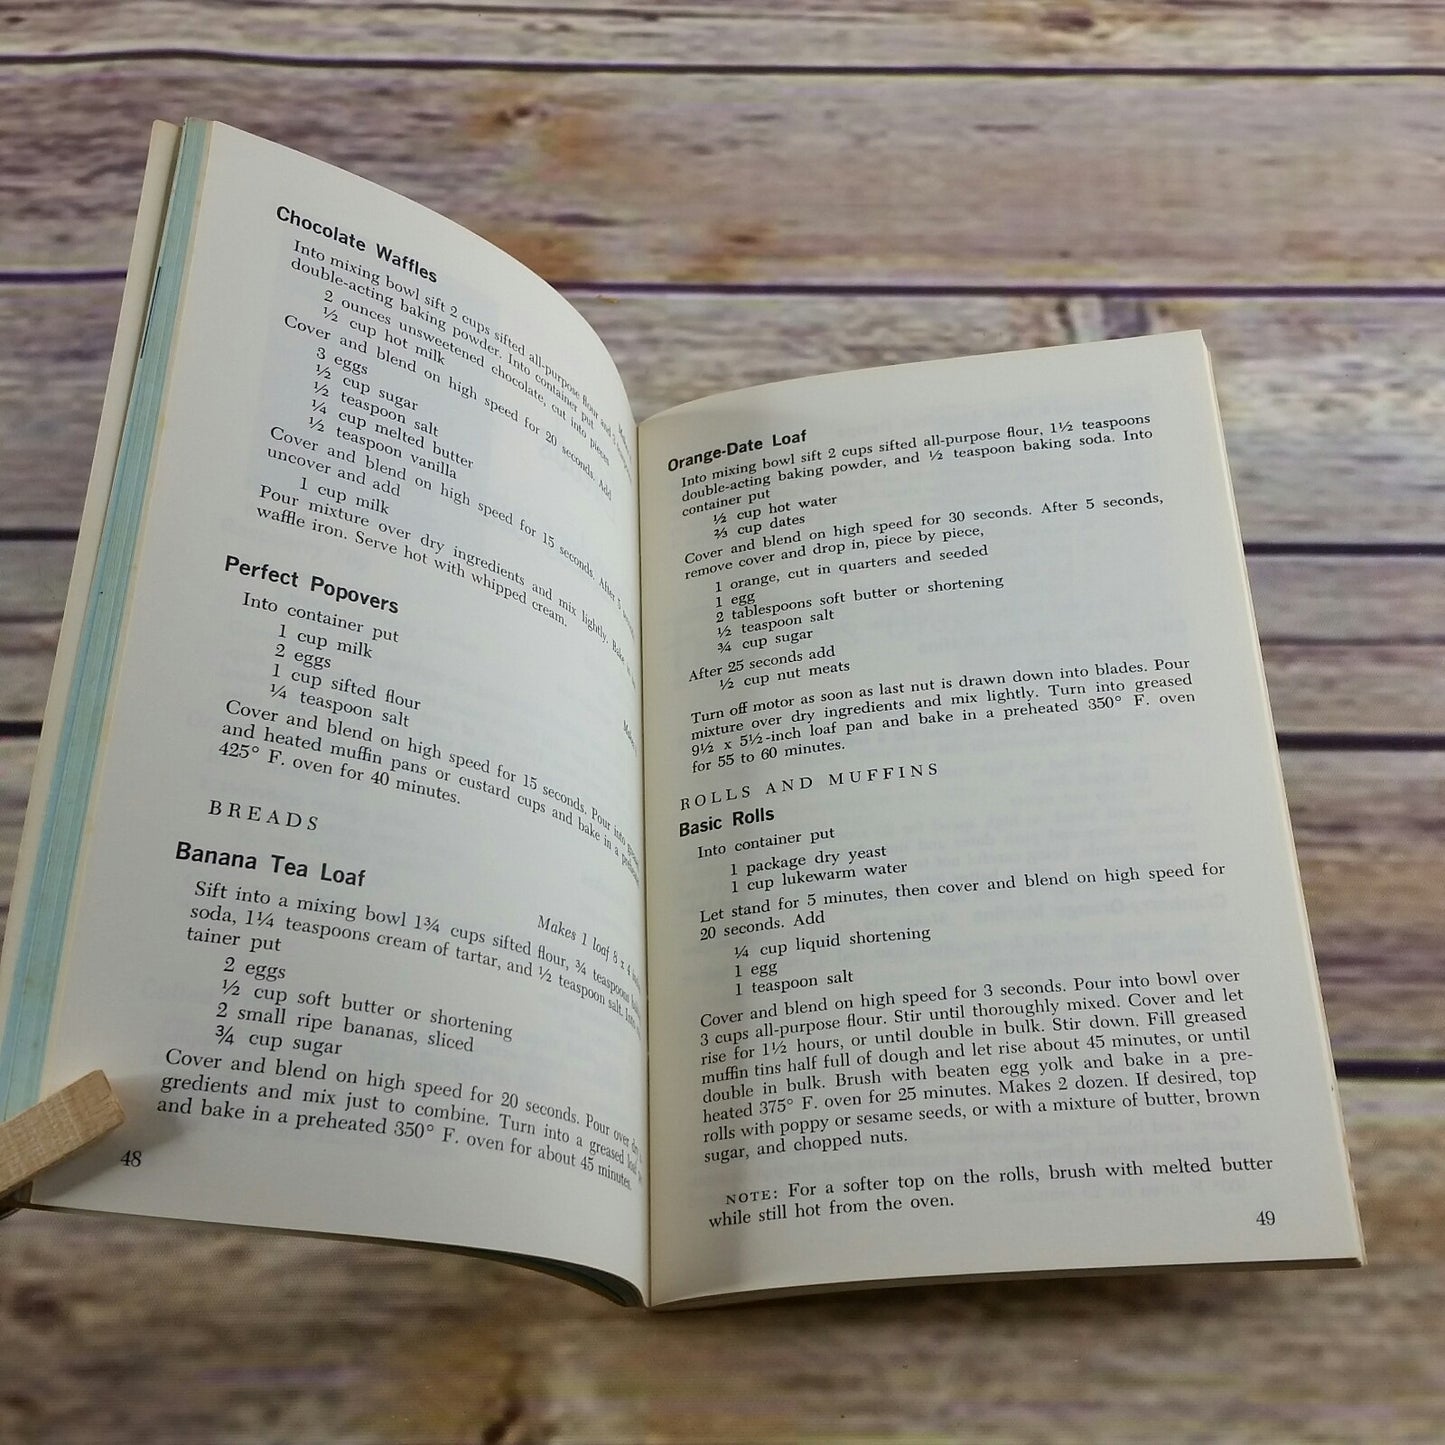 Vintage Waring Blender Cook Book Short Course in Blendor Cooking 1962 Paperback Booklet - At Grandma's Table